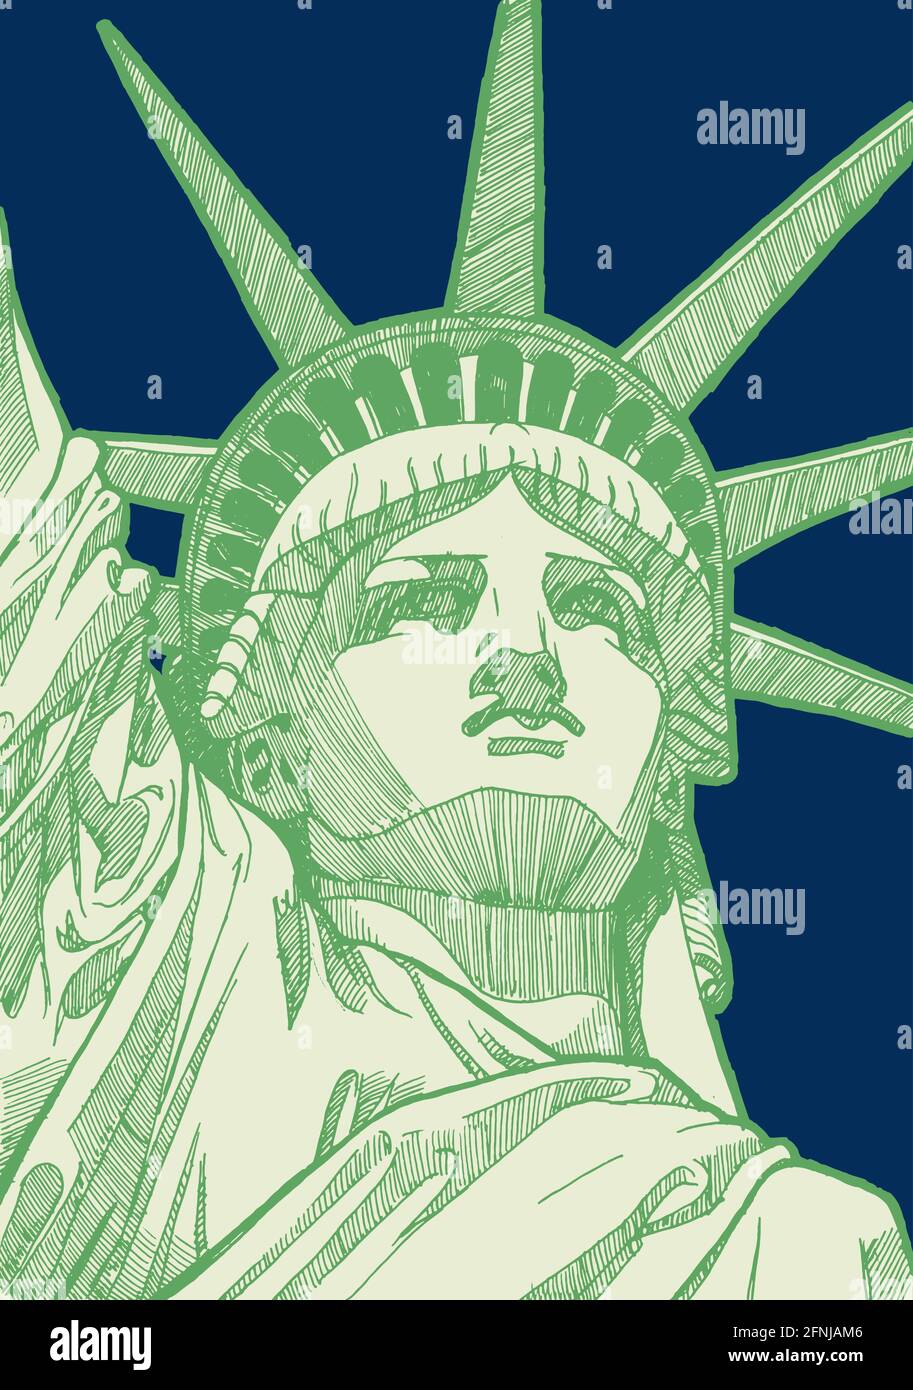 Dessin de la statue de la liberté à New York City, Etats-Unis d'Amérique - illustration du 4 juillet Illustration de Vecteur